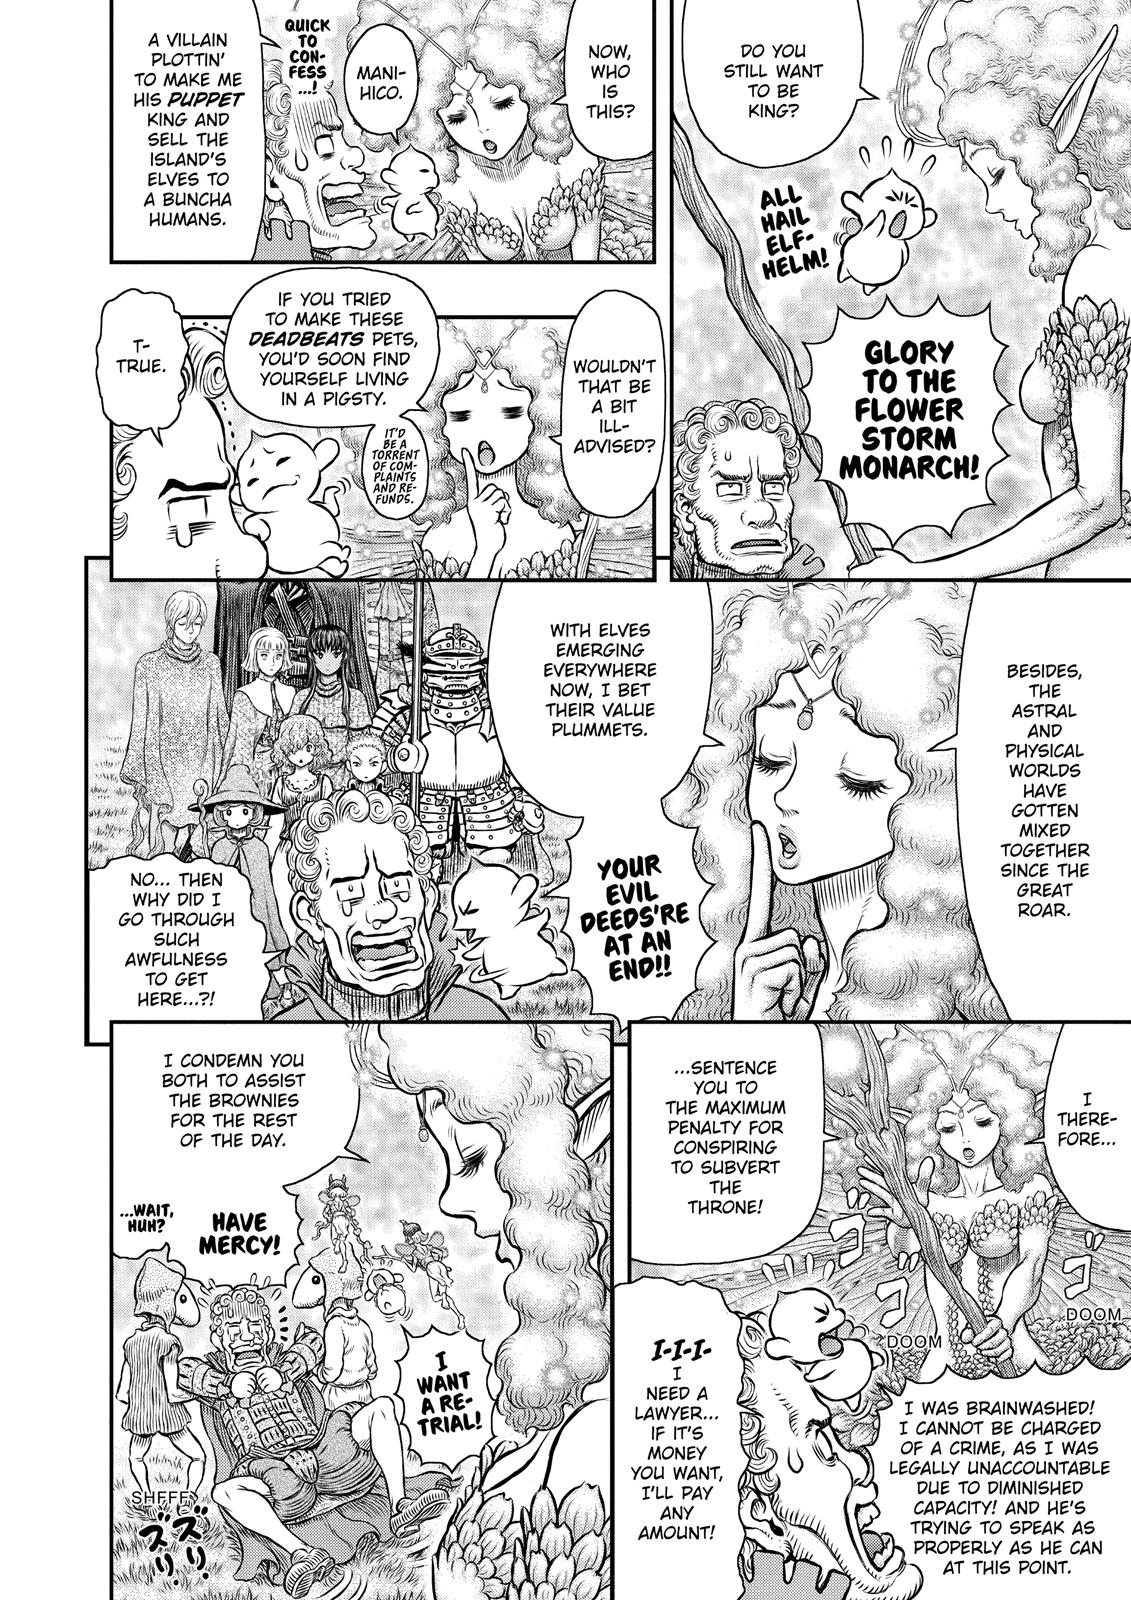 Berserk Manga Chapter 347 image 05